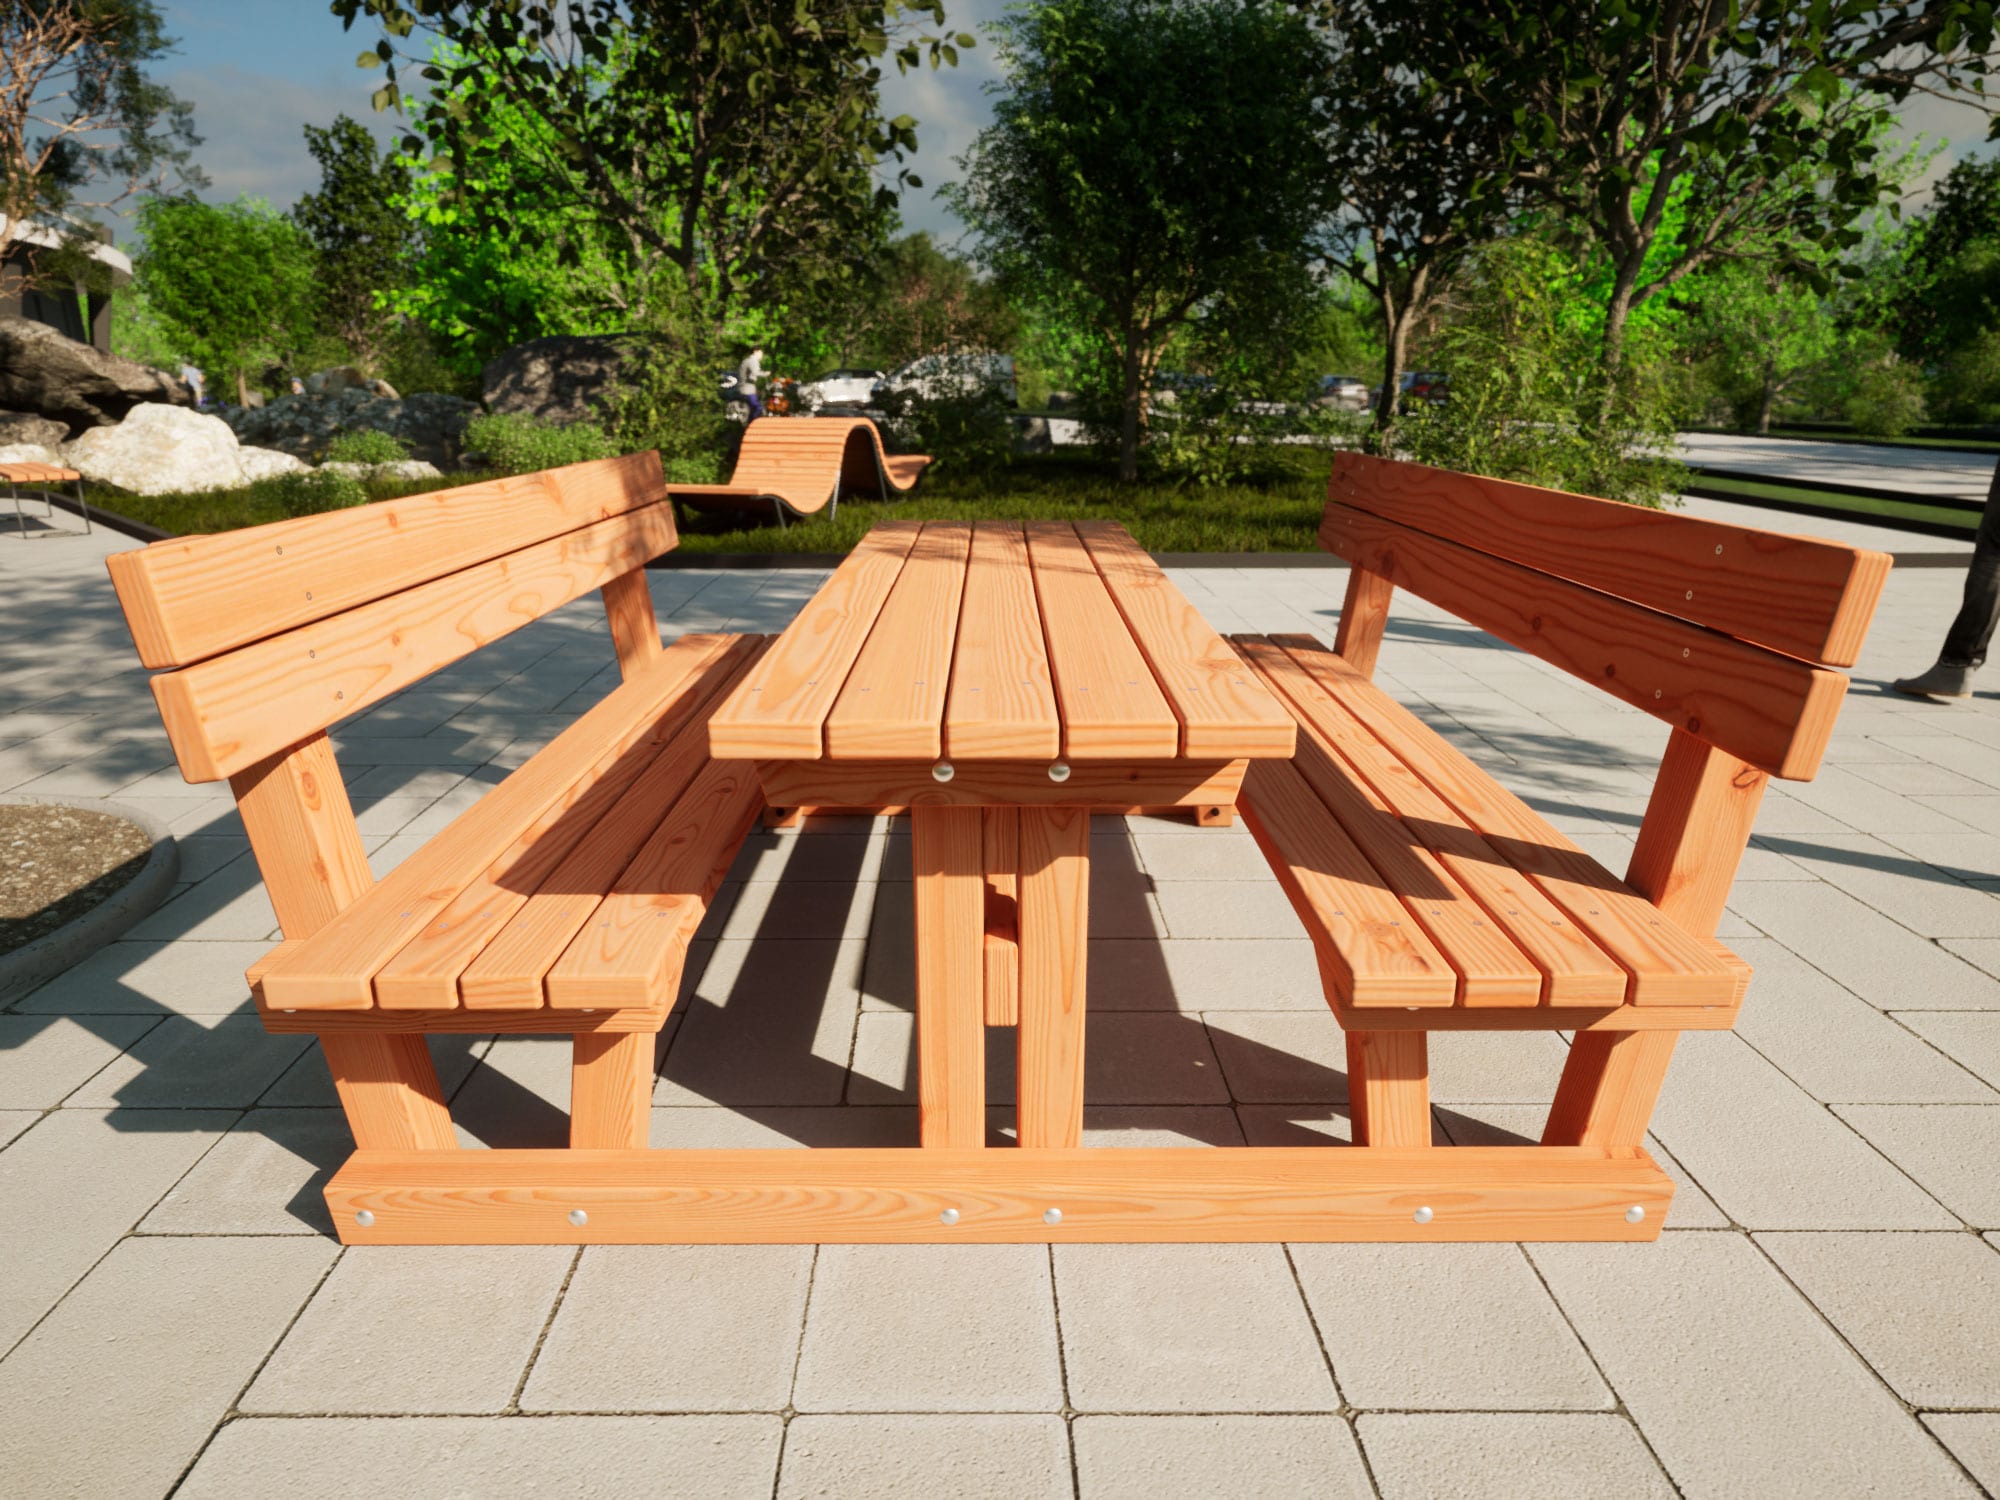 Tisch Bank Kombination mit Lehne aus Holz in einem Park